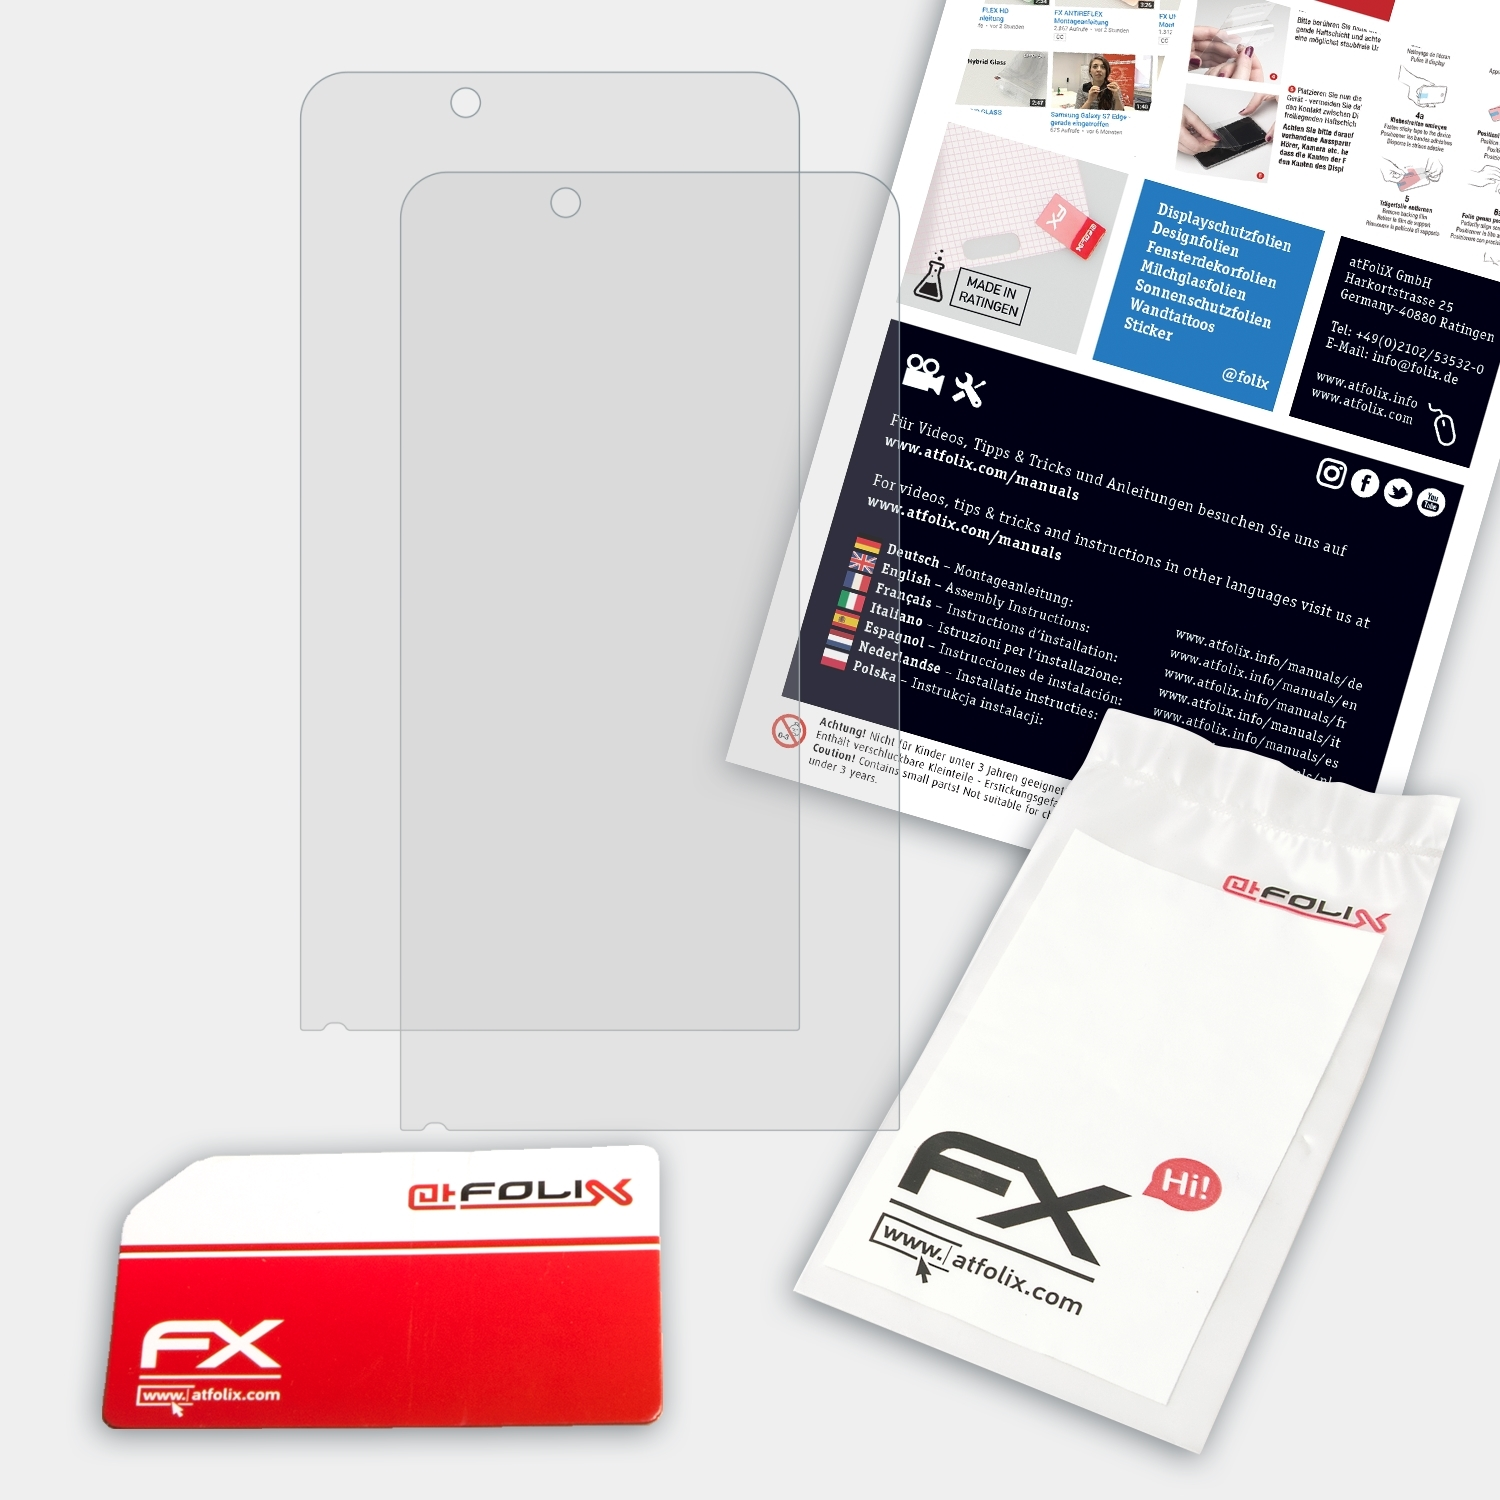 FX-Antireflex Nautiz X6) ATFOLIX Displayschutz(für Handheld 2x